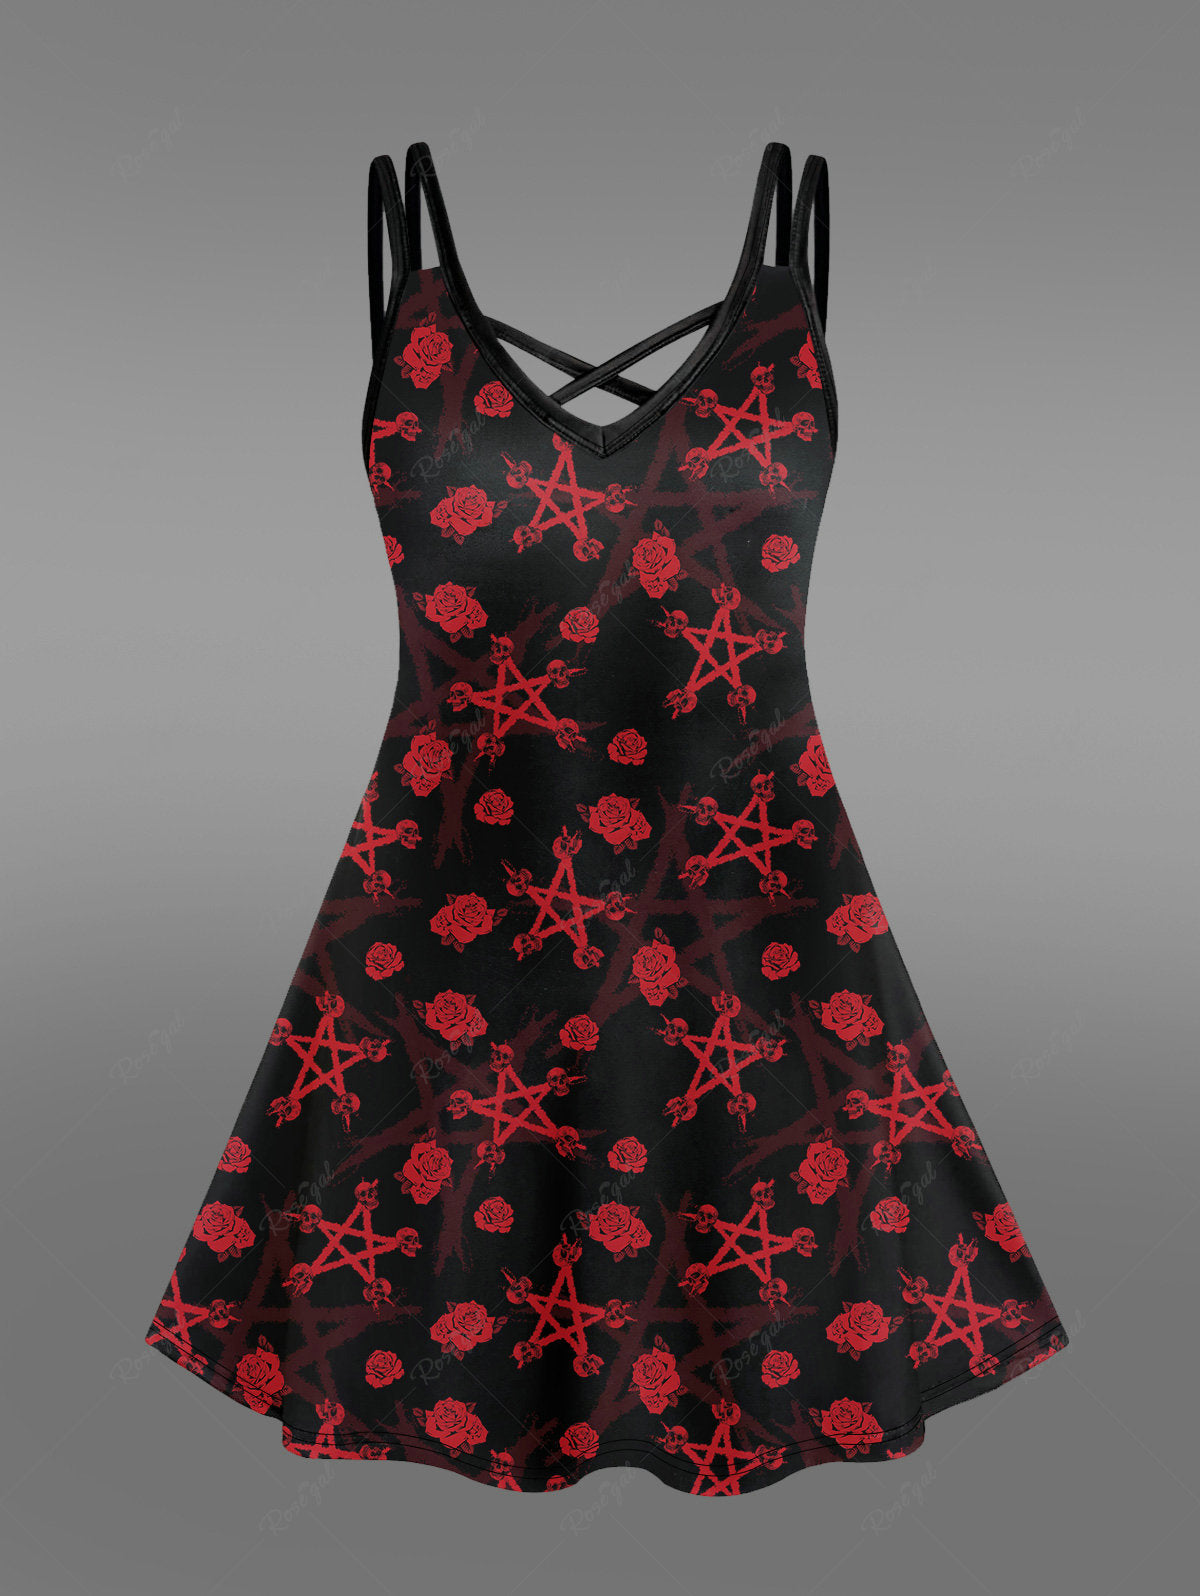 💗Stephanie Loves💗 Gothic Pentagon Skulls Flower Print Crisscross Cami Dress